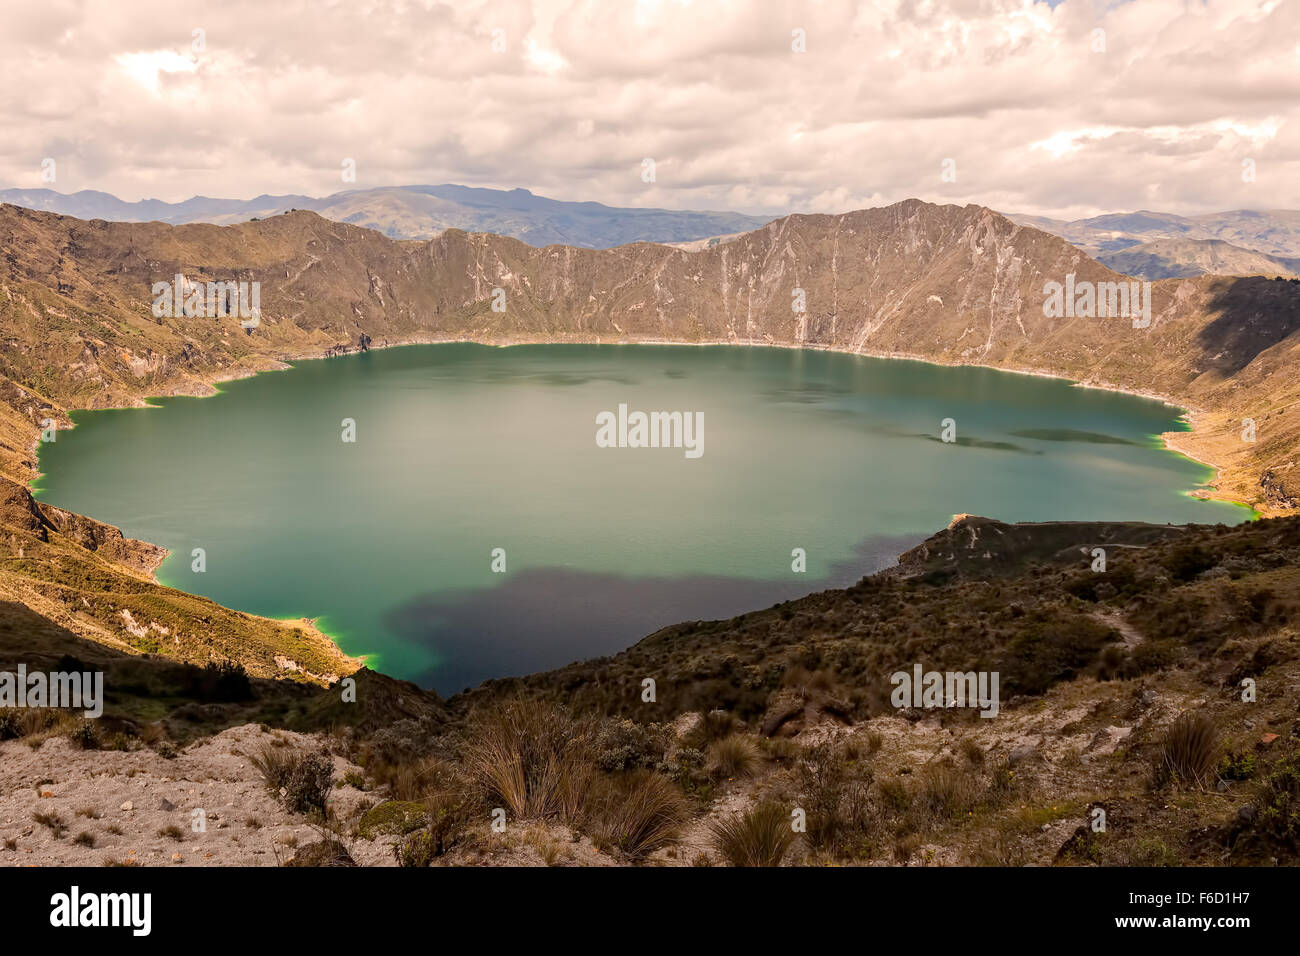 Lago di Quilotoa è riempita di acqua Caldera che è stata formata dal collasso del vulcano a seguito di una catastrofica eruzione Foto Stock